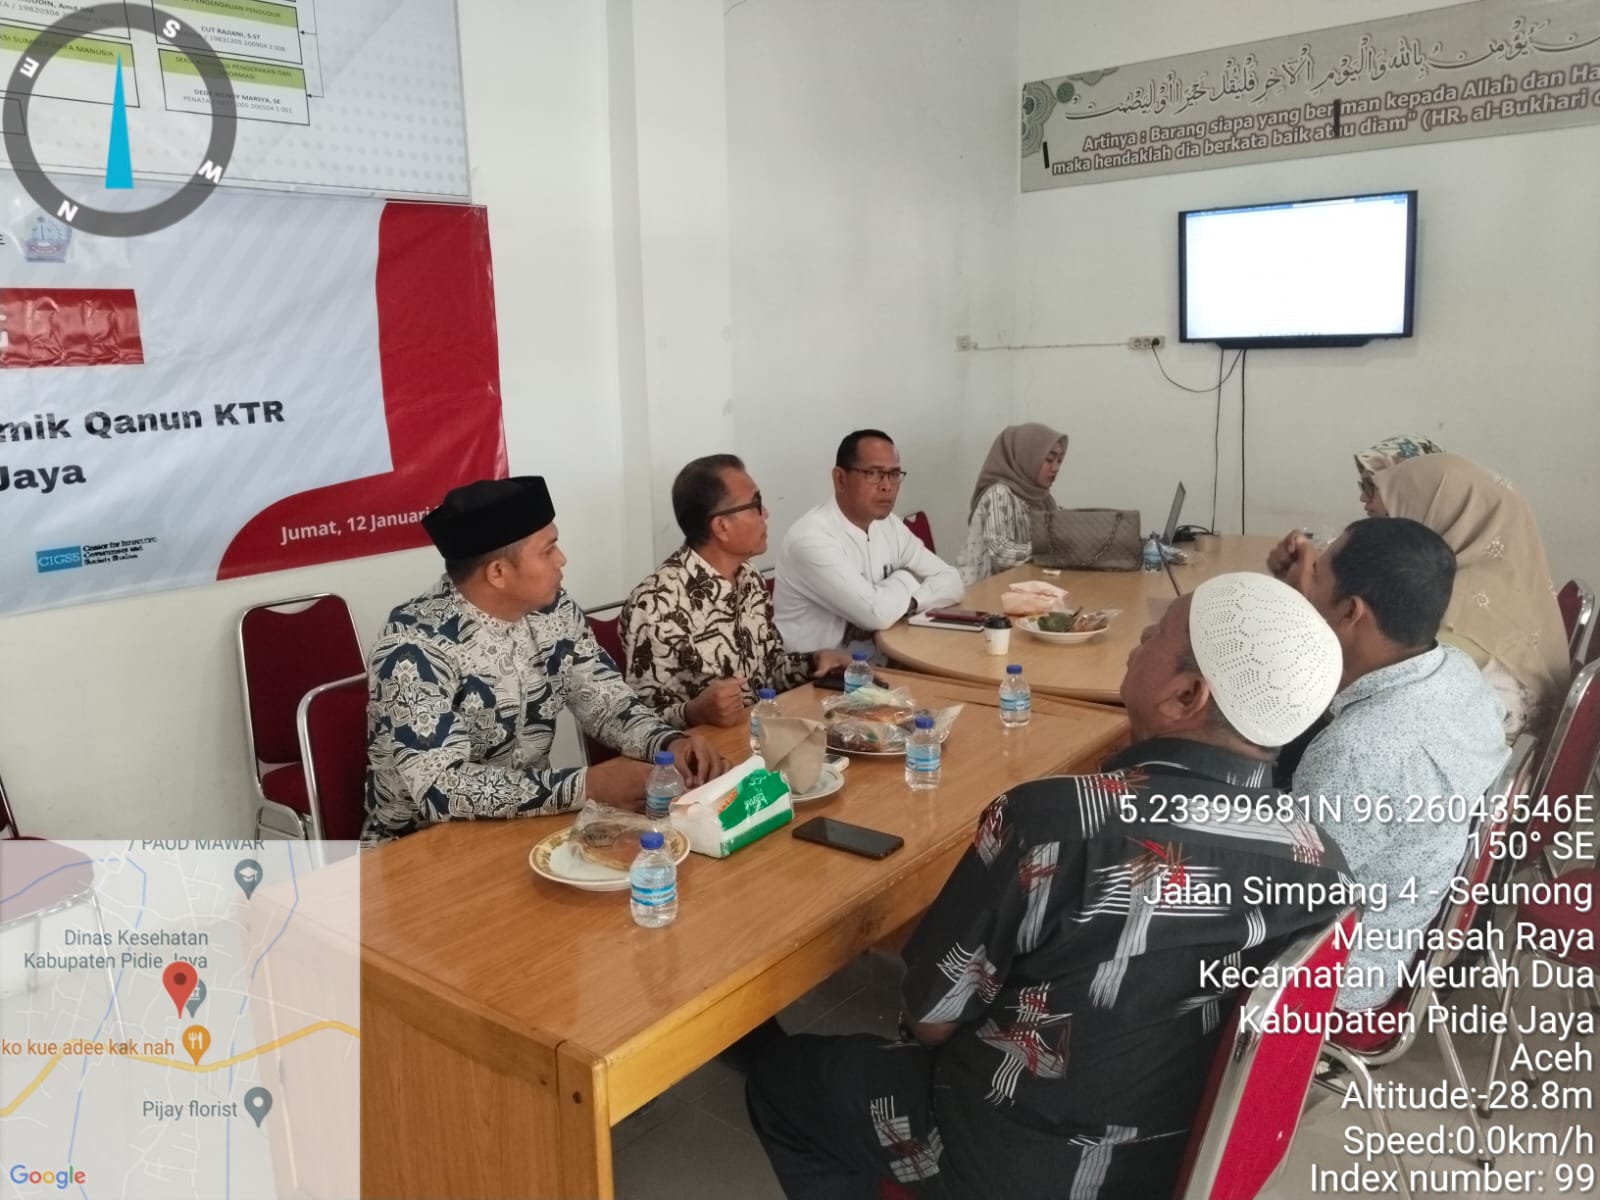 Akademisi STIS-UA Diundang The Aceh Institute dan Dinkes Pijay Bahas Percepat Lahirnya Qanun KTR